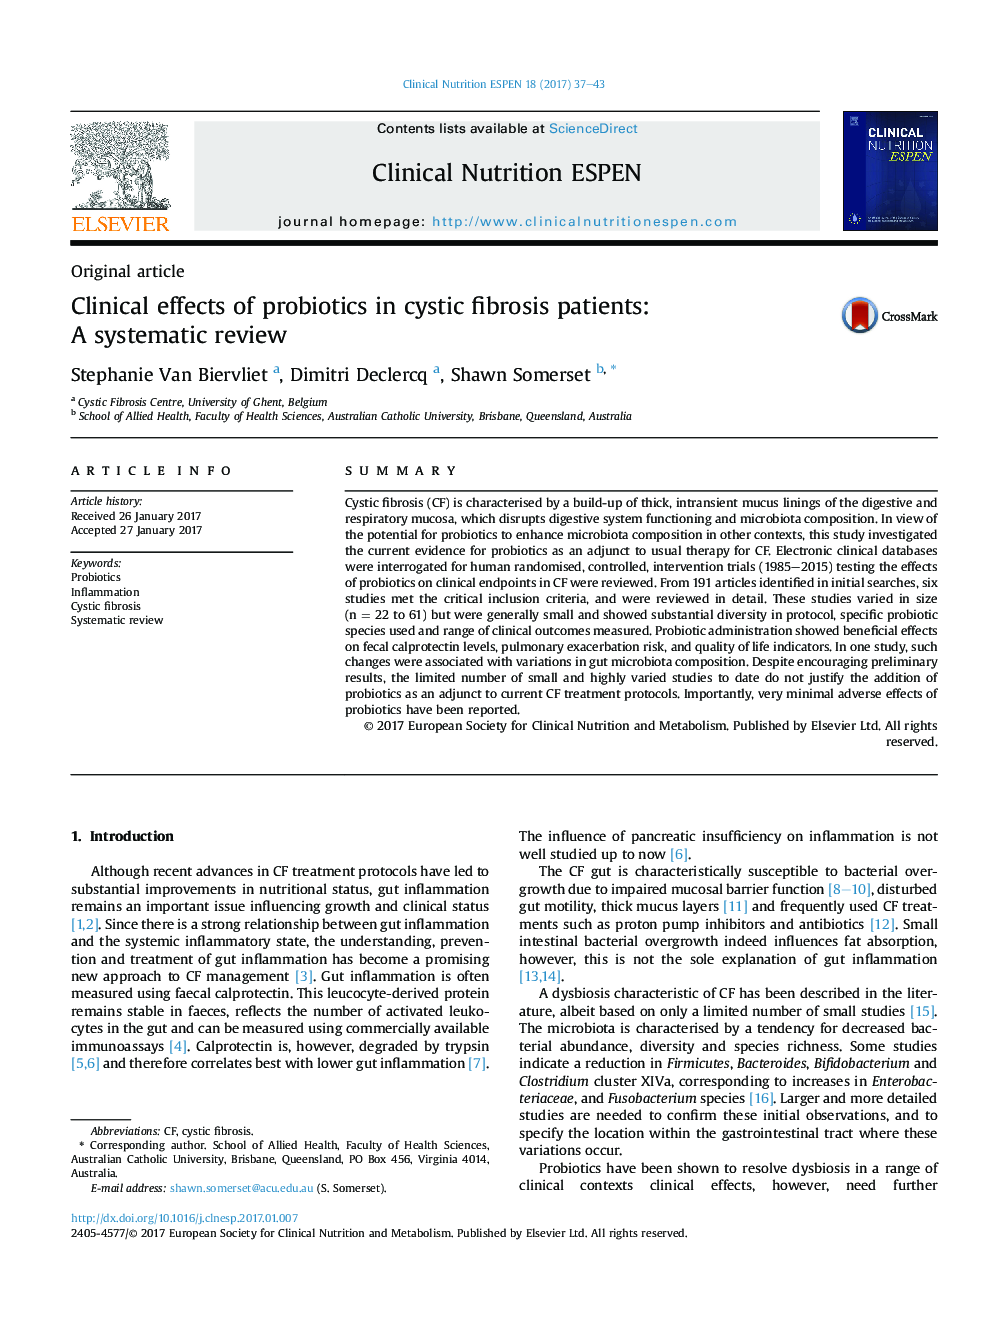 مقاله اصلی اثرات کلینیکی پروبیوتیک در بیماران فیبروز کیستیک: بررسی سیستماتیک 